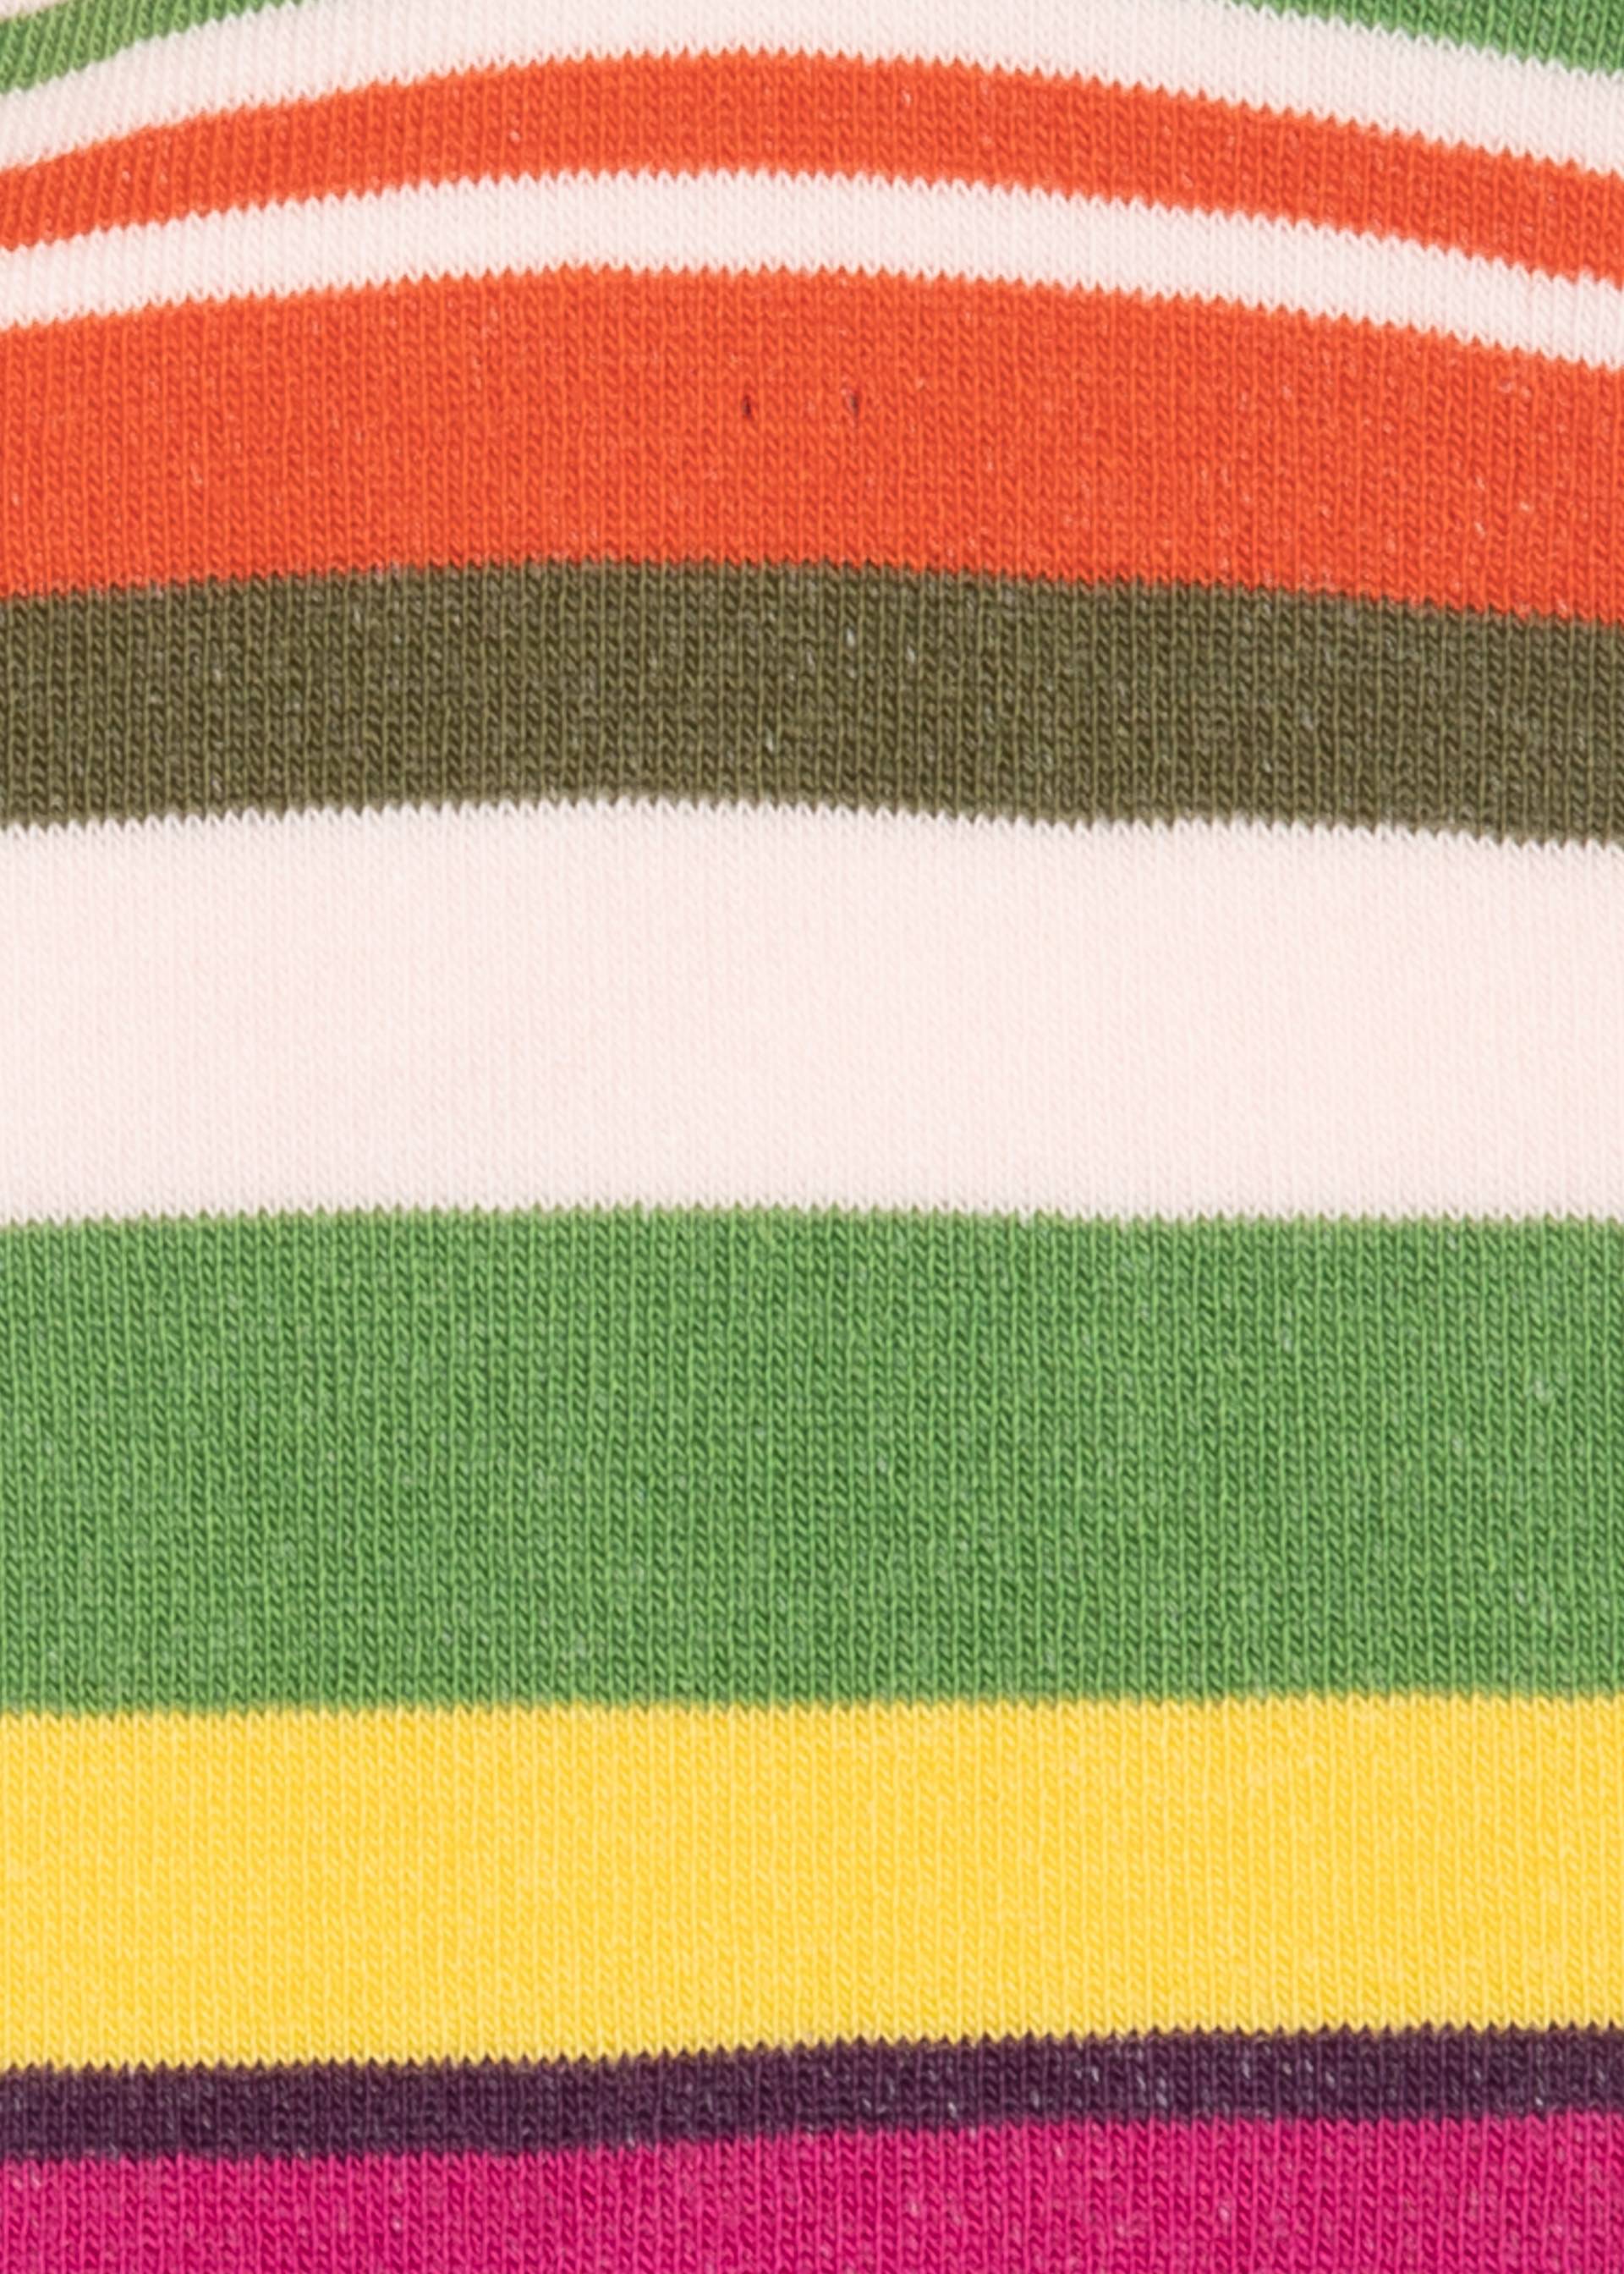 Baumwollsocken Sensational Steps, summer stripes, Socken, Rosa